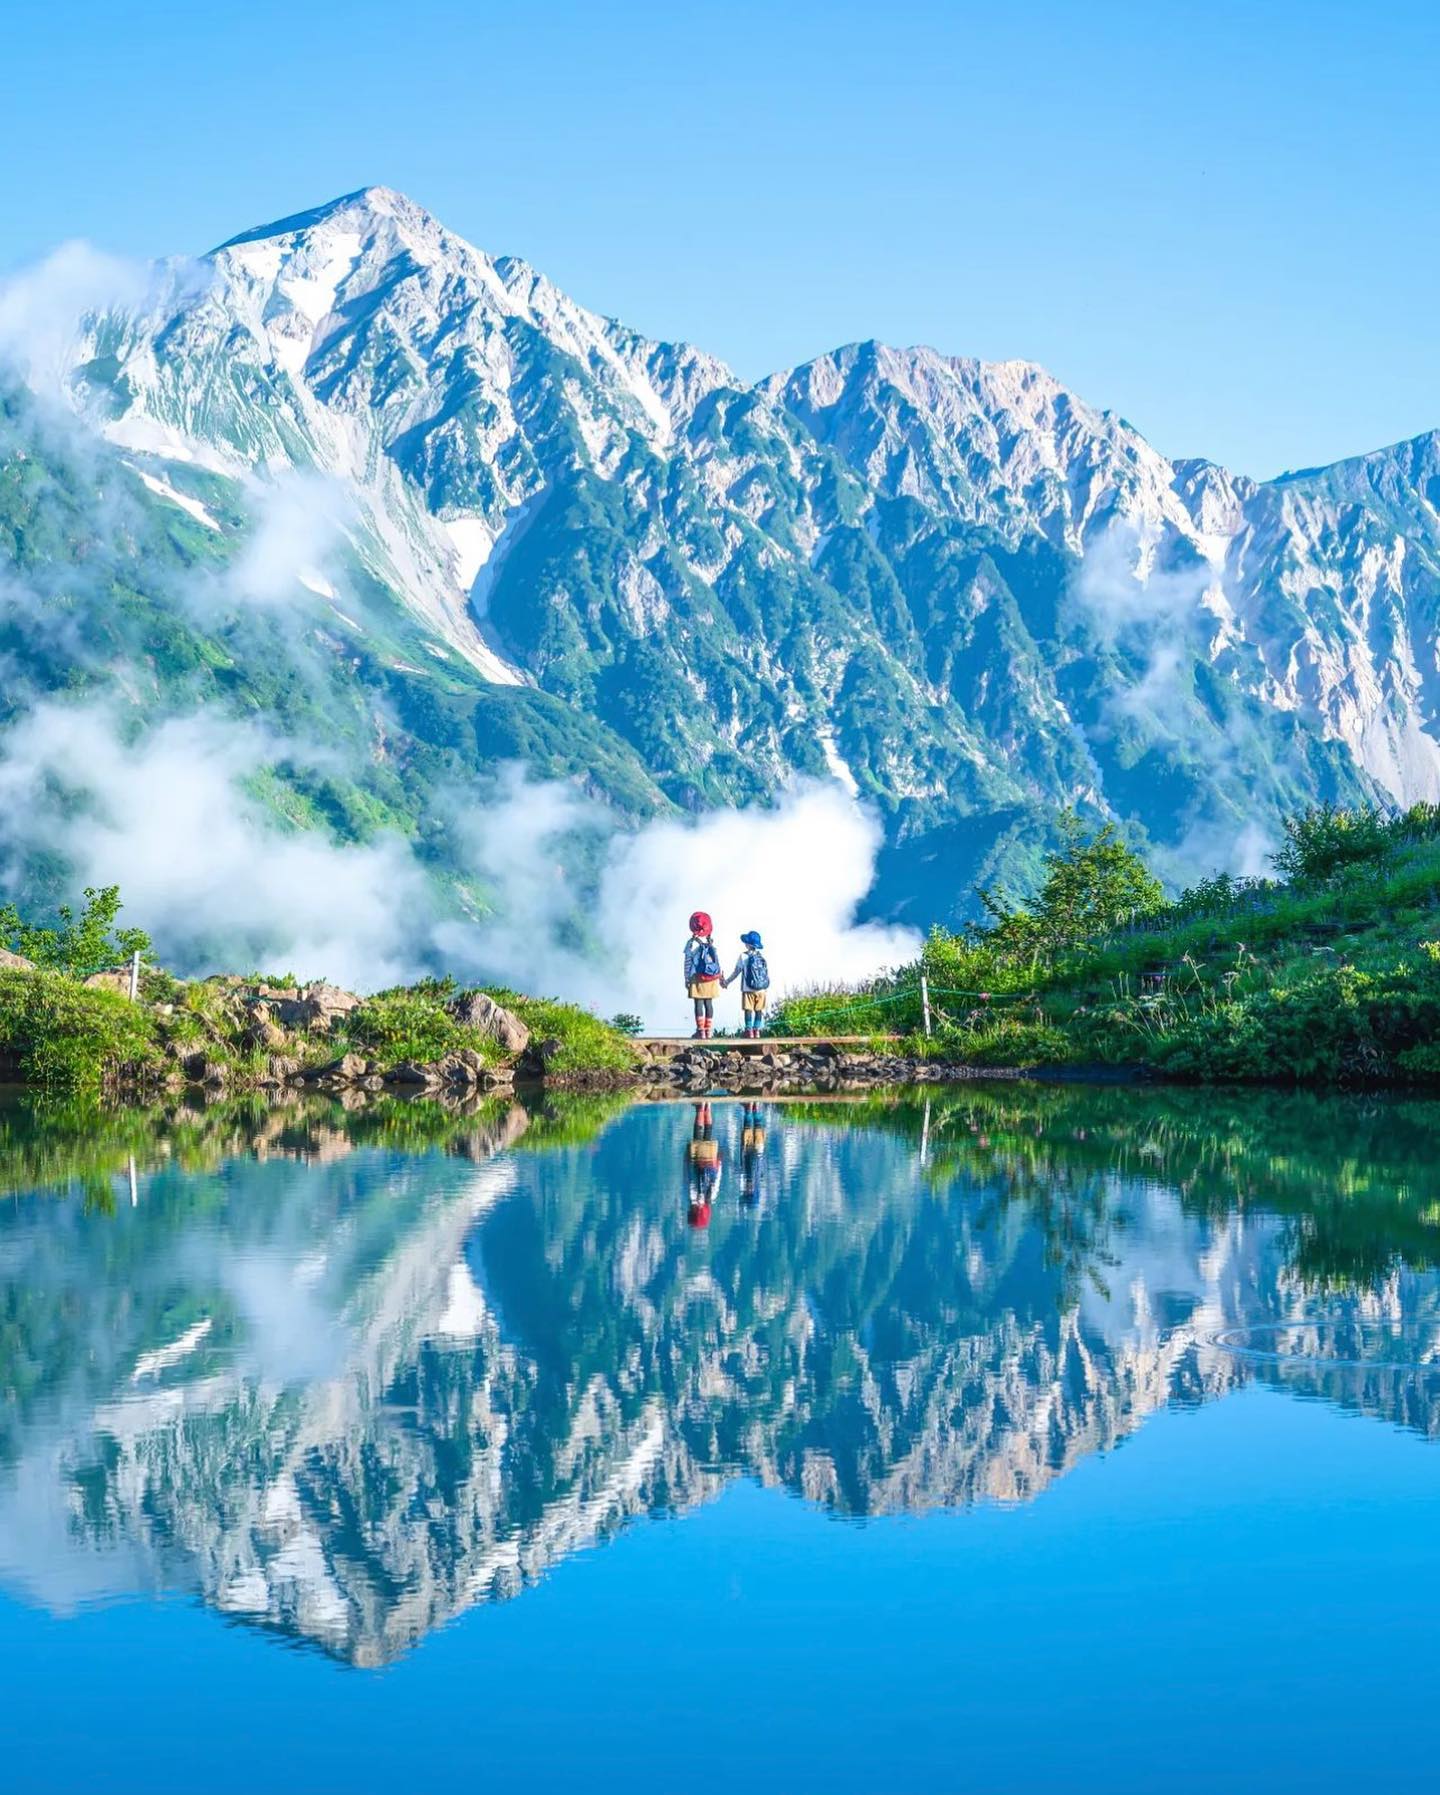 🇯🇵 【長野 Nagano】白馬 八方池
⛰️ 八方池是白馬岳最知名的絕景之一。水池位於海拔2060多米，無風時如同一面巨大的鏡子，能完美倒映著白馬連峰
❤️八方池四季有不同美景，秋天可以欣賞火紅楓葉，初夏則能一覽殘雪餘存的銀白世界，昂景色非常壯觀，是日本中部地區最具代表性的攝影地點
📷credit@kaji_nori06

#japantravel #nagano #hakuba #長野旅行 #白馬八方池 #八方池 #把世界當教室🌍 #travelwithmikeanna